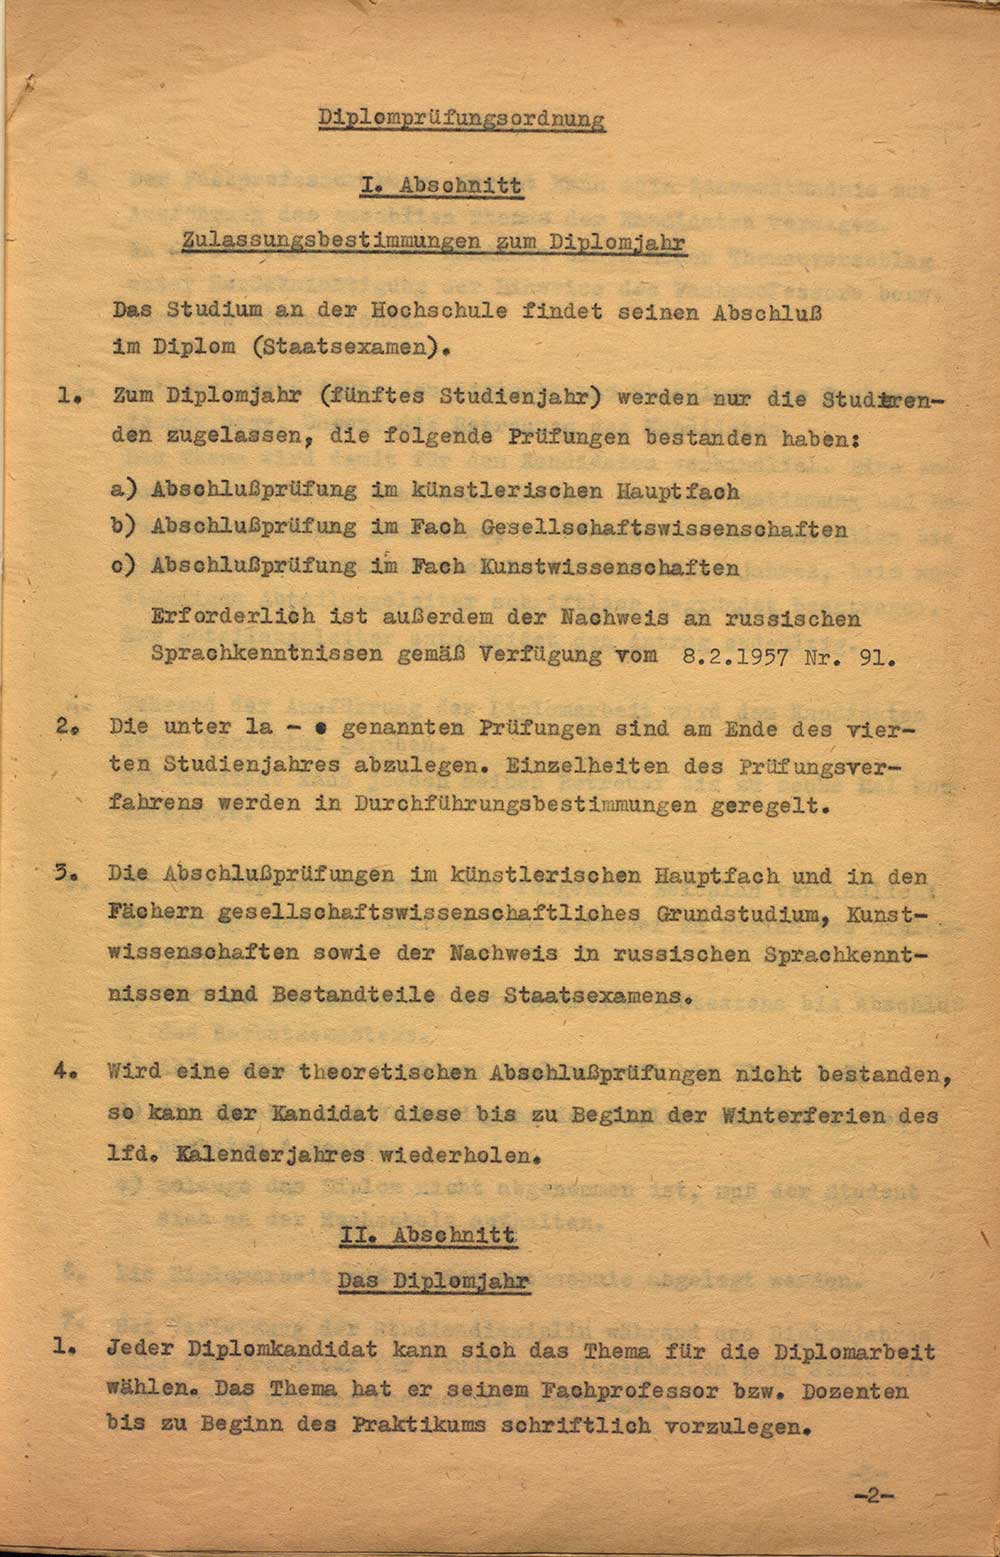 Diplomprüfungsordnung der Hochschule für Bildende Künste Dresden vom 01.05.1958 Archiv HfBK Dresden, 05/EA/112, unpag. (1)